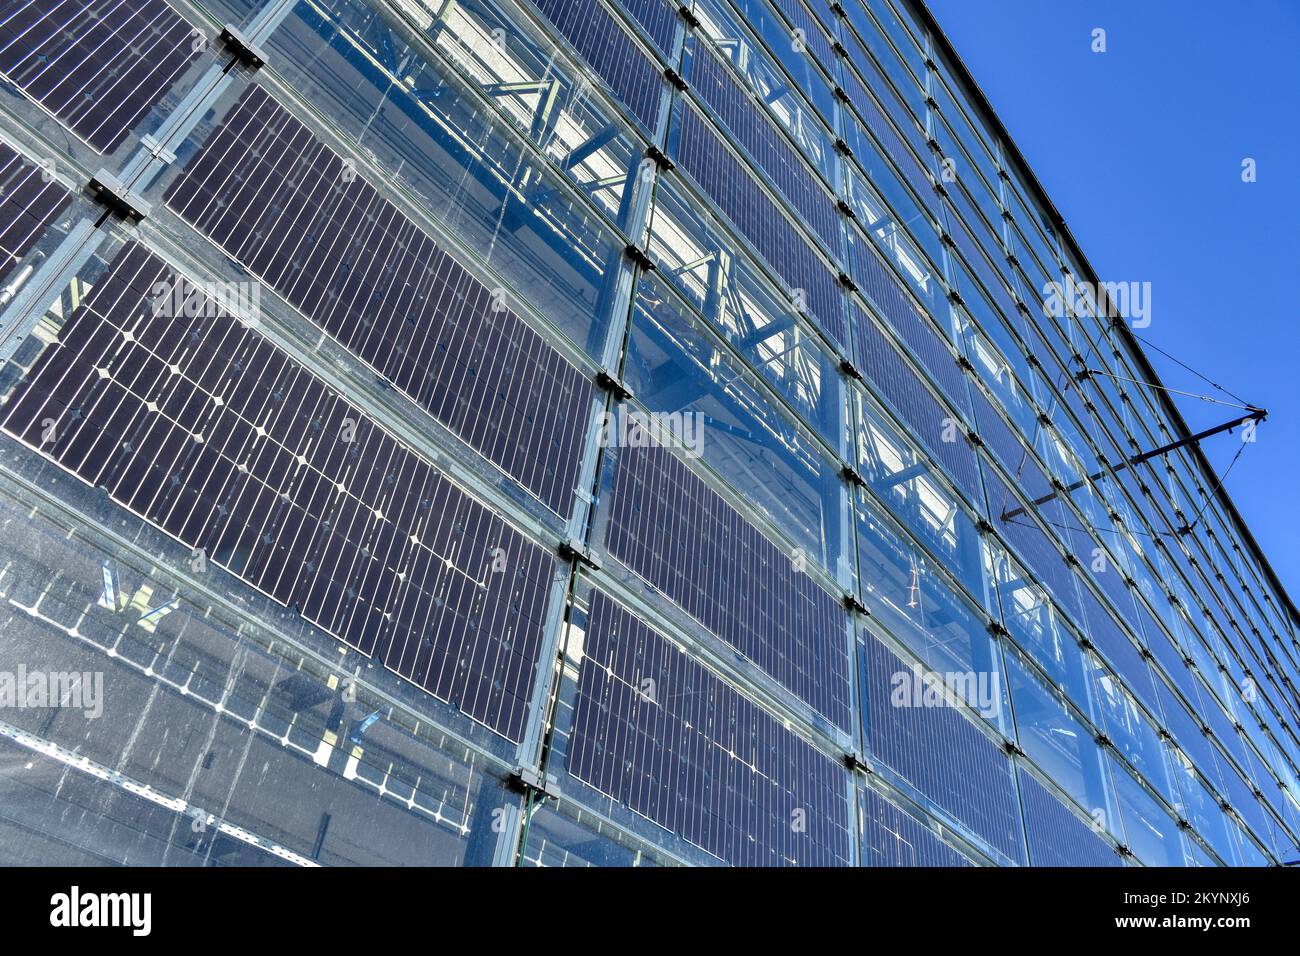 Photovoltaik, Sonnenenergie, Solarzellen, Panel, Silizium, Strom, Energie, Sonne, Licht, Autark, grün, Stromerzeugung, unabhängig, Fotovoltaik, Lichte Stock Photo